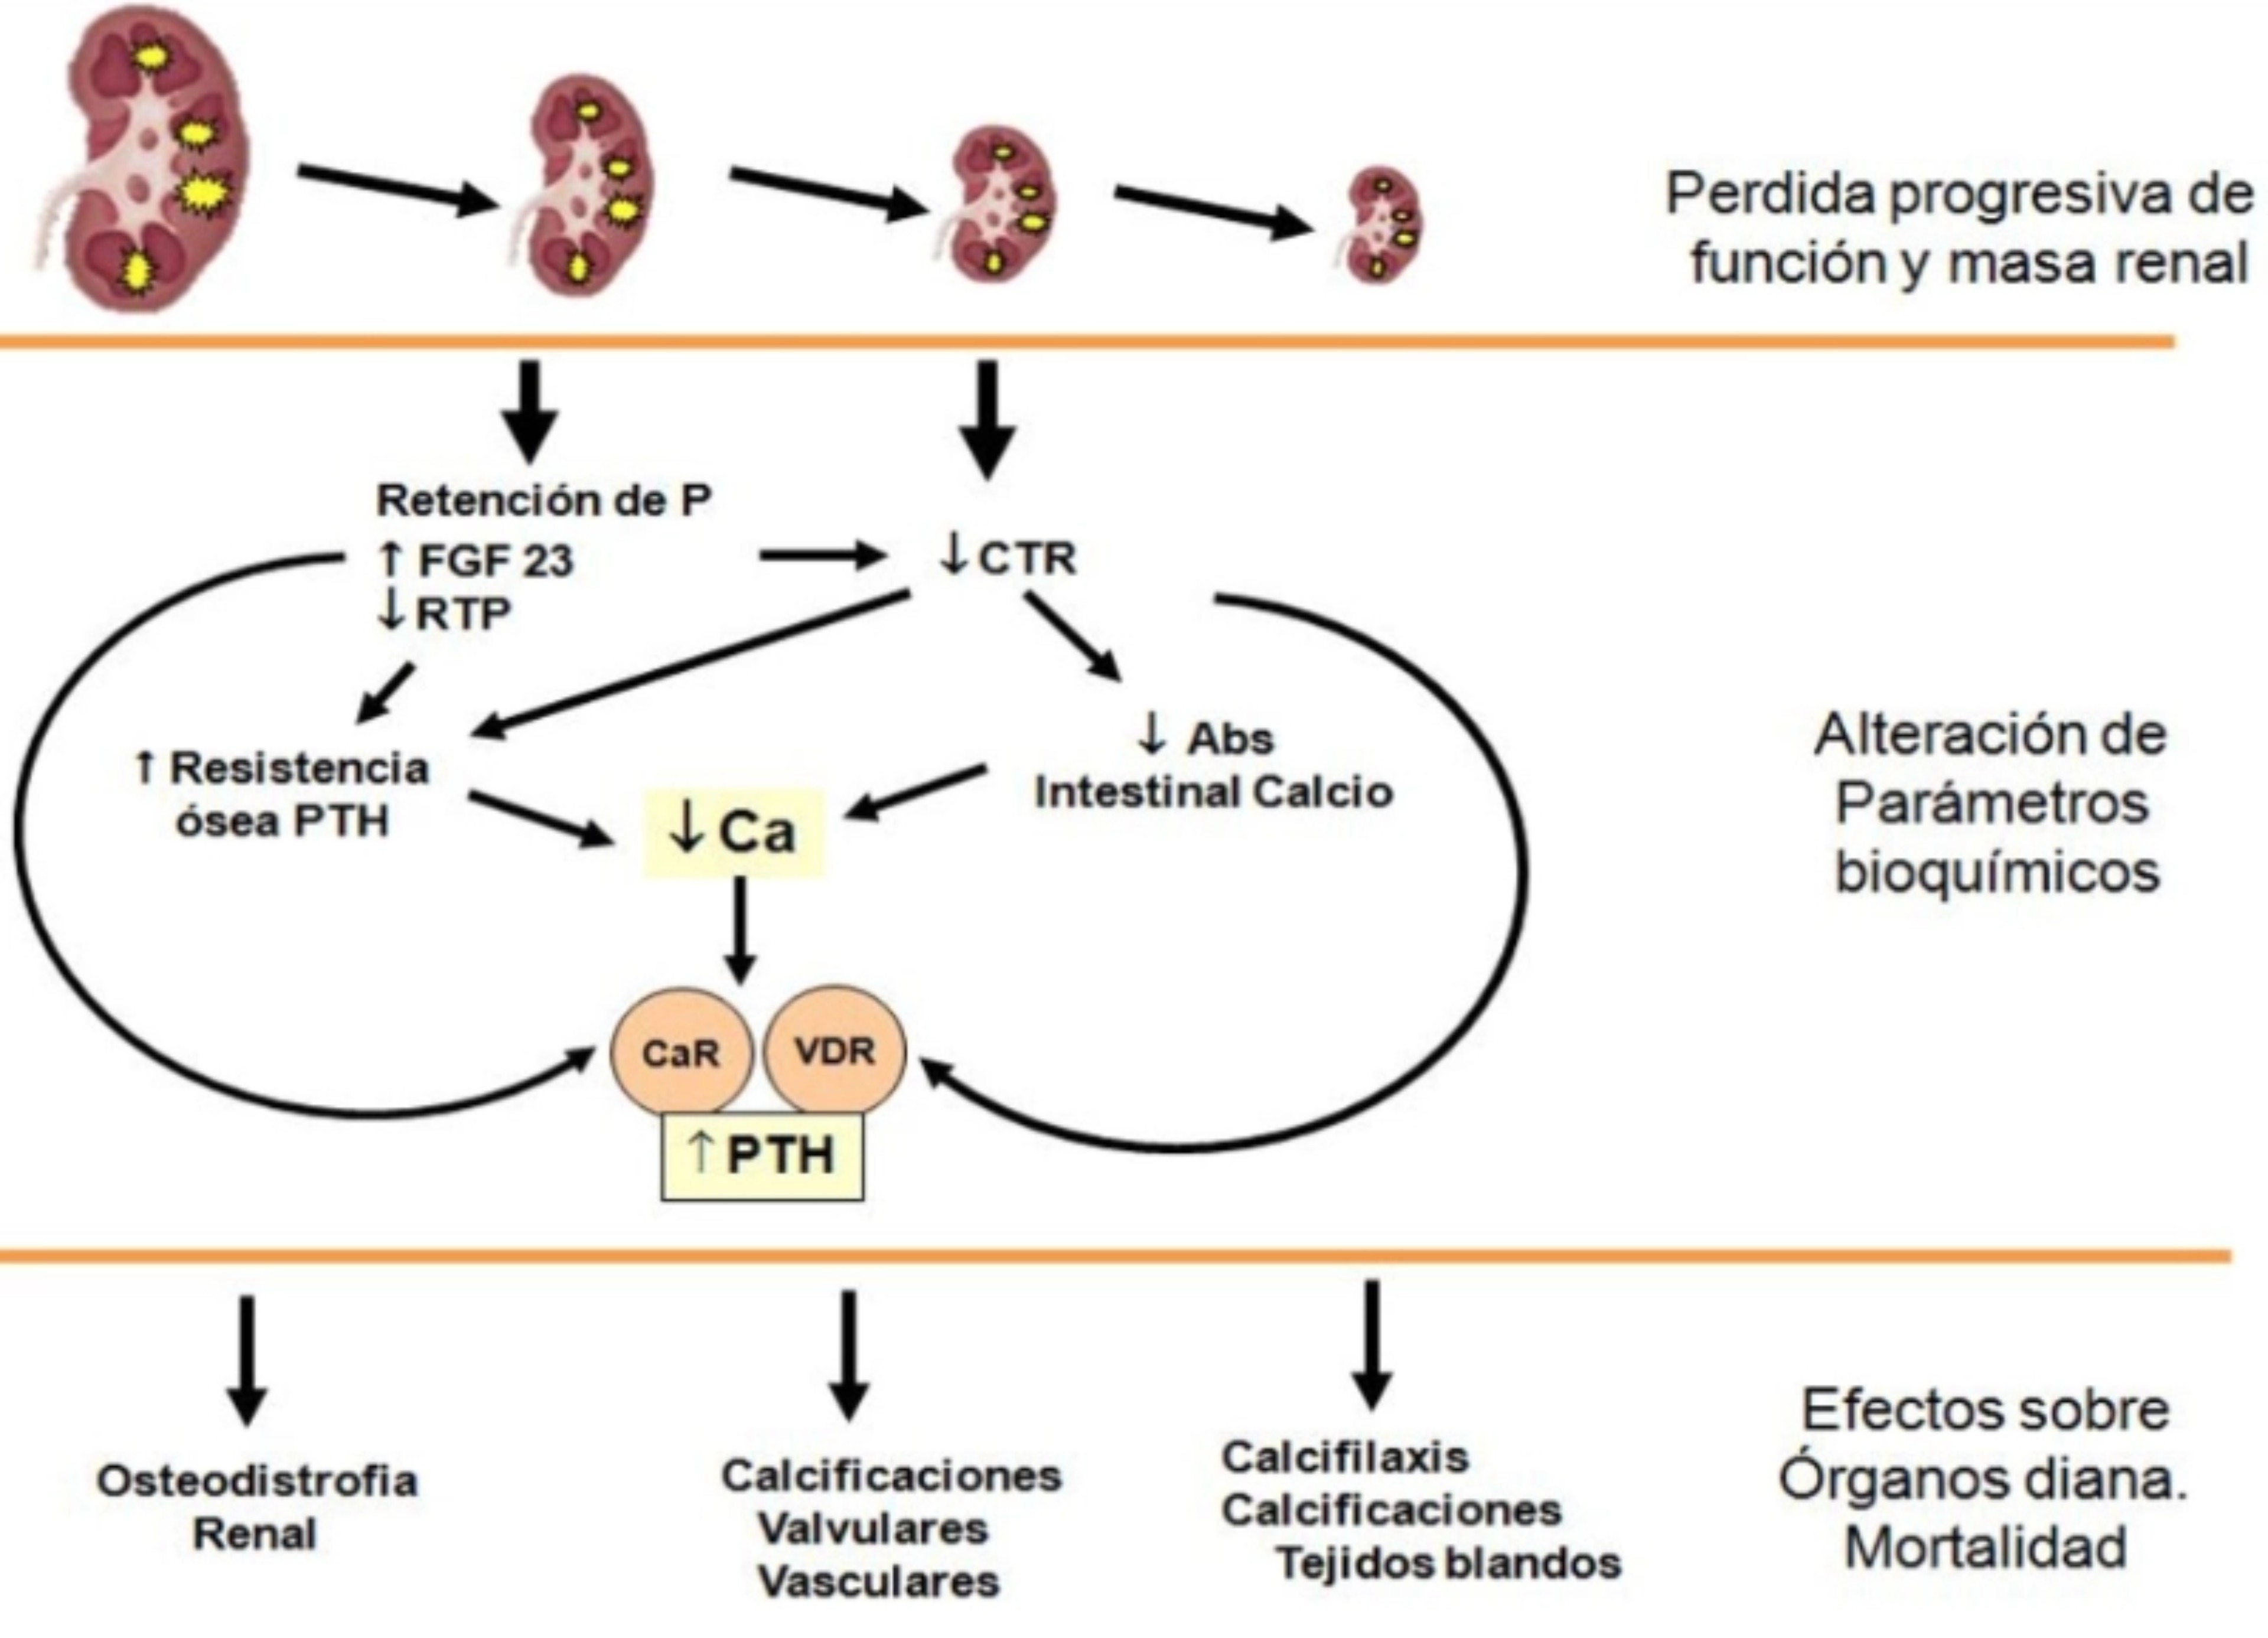 Alteraciones de los parámetros bioquímicos en la progresión de la enfermedad renal crónica (ERC)